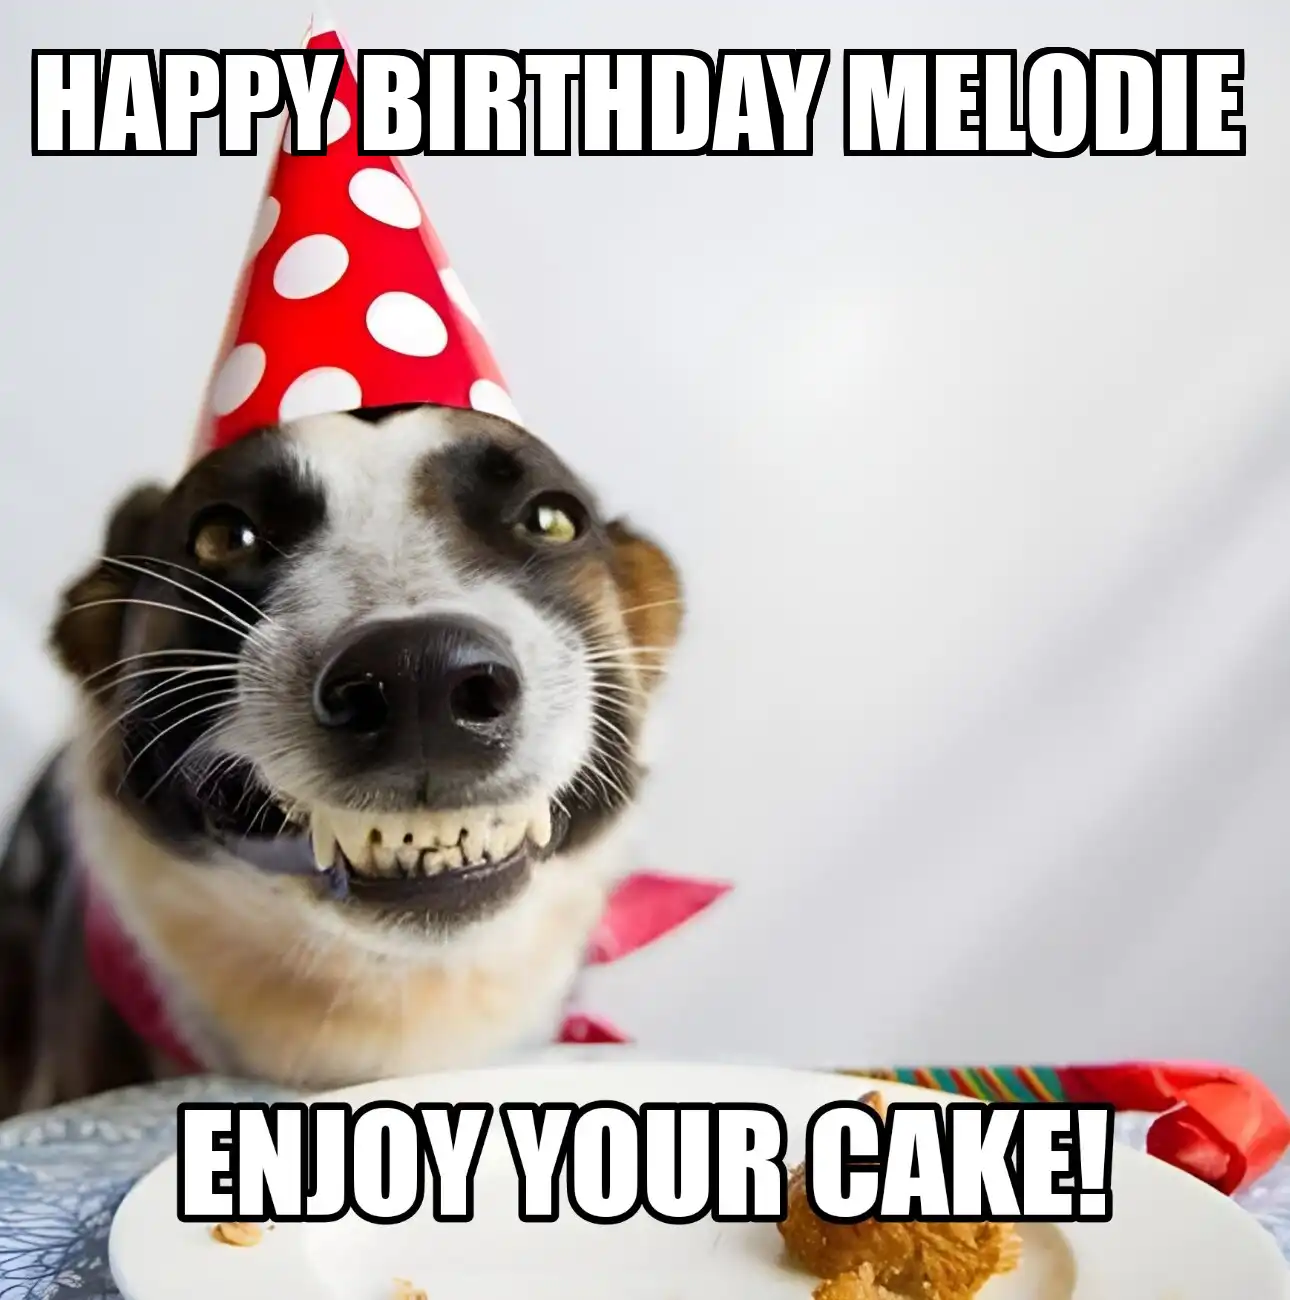 Happy Birthday Melodie Enjoy Your Cake Dog Meme